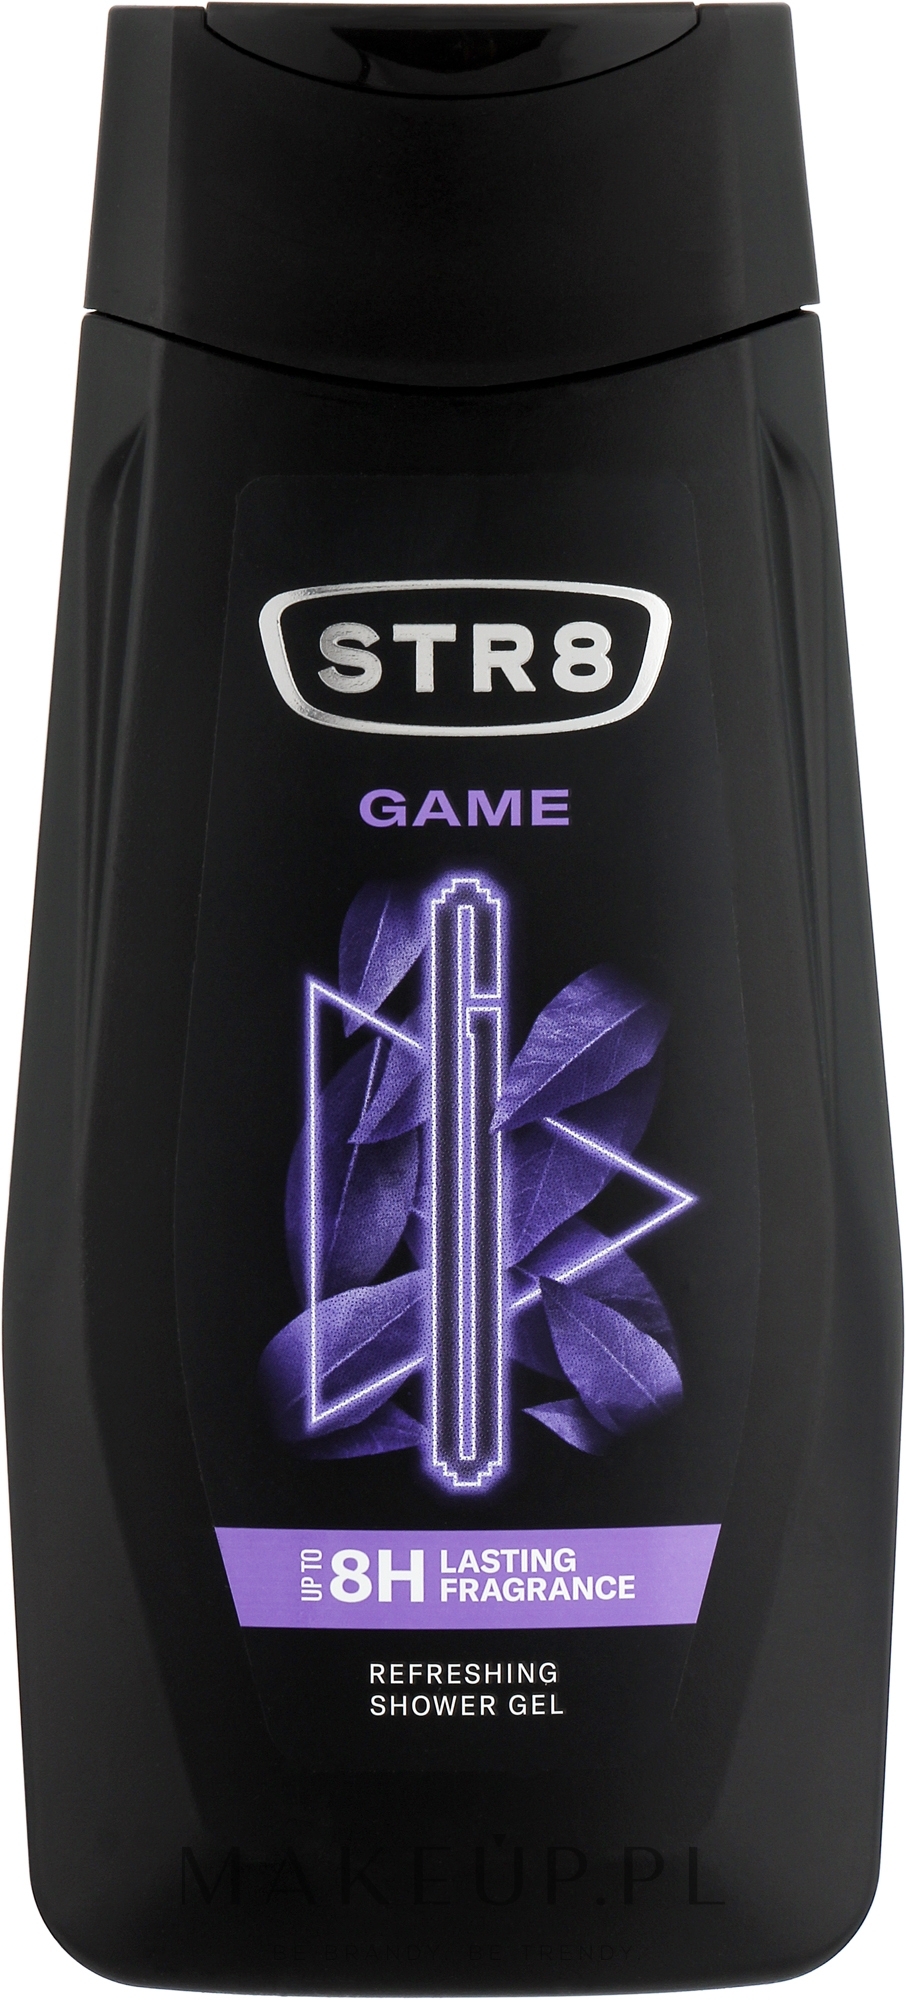 Żel pod prysznic dla mężczyzn - STR8 Game Refreshing Shower Gel Up To 8H Lasting Fragrance — Zdjęcie 250 ml